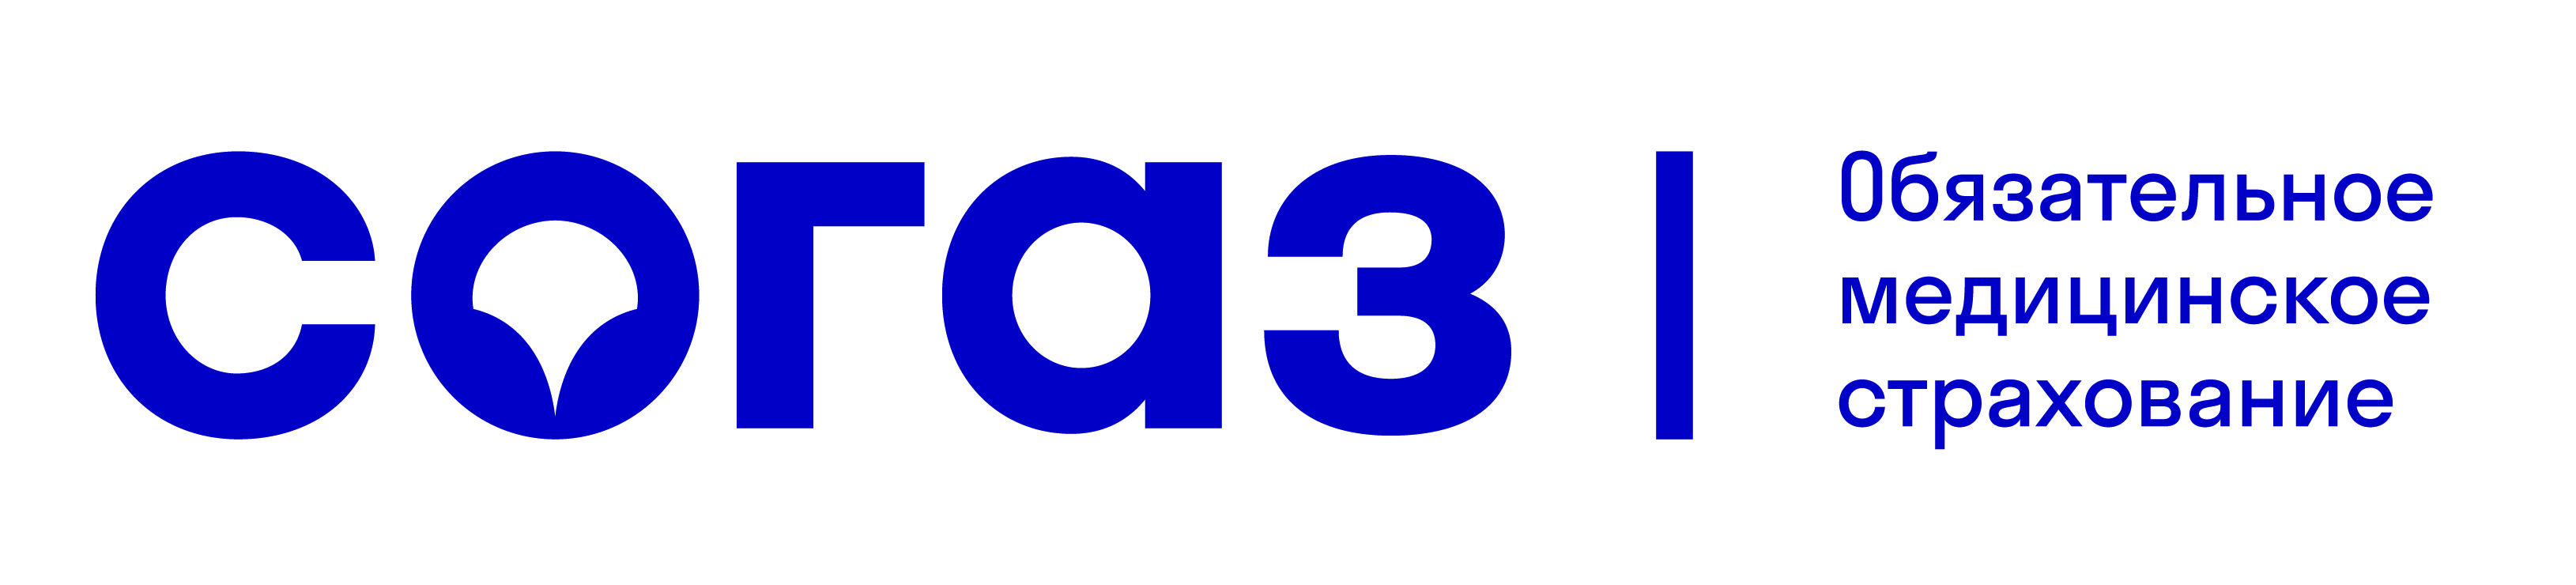 Лого СОГАЗ ОМС 3.jpg